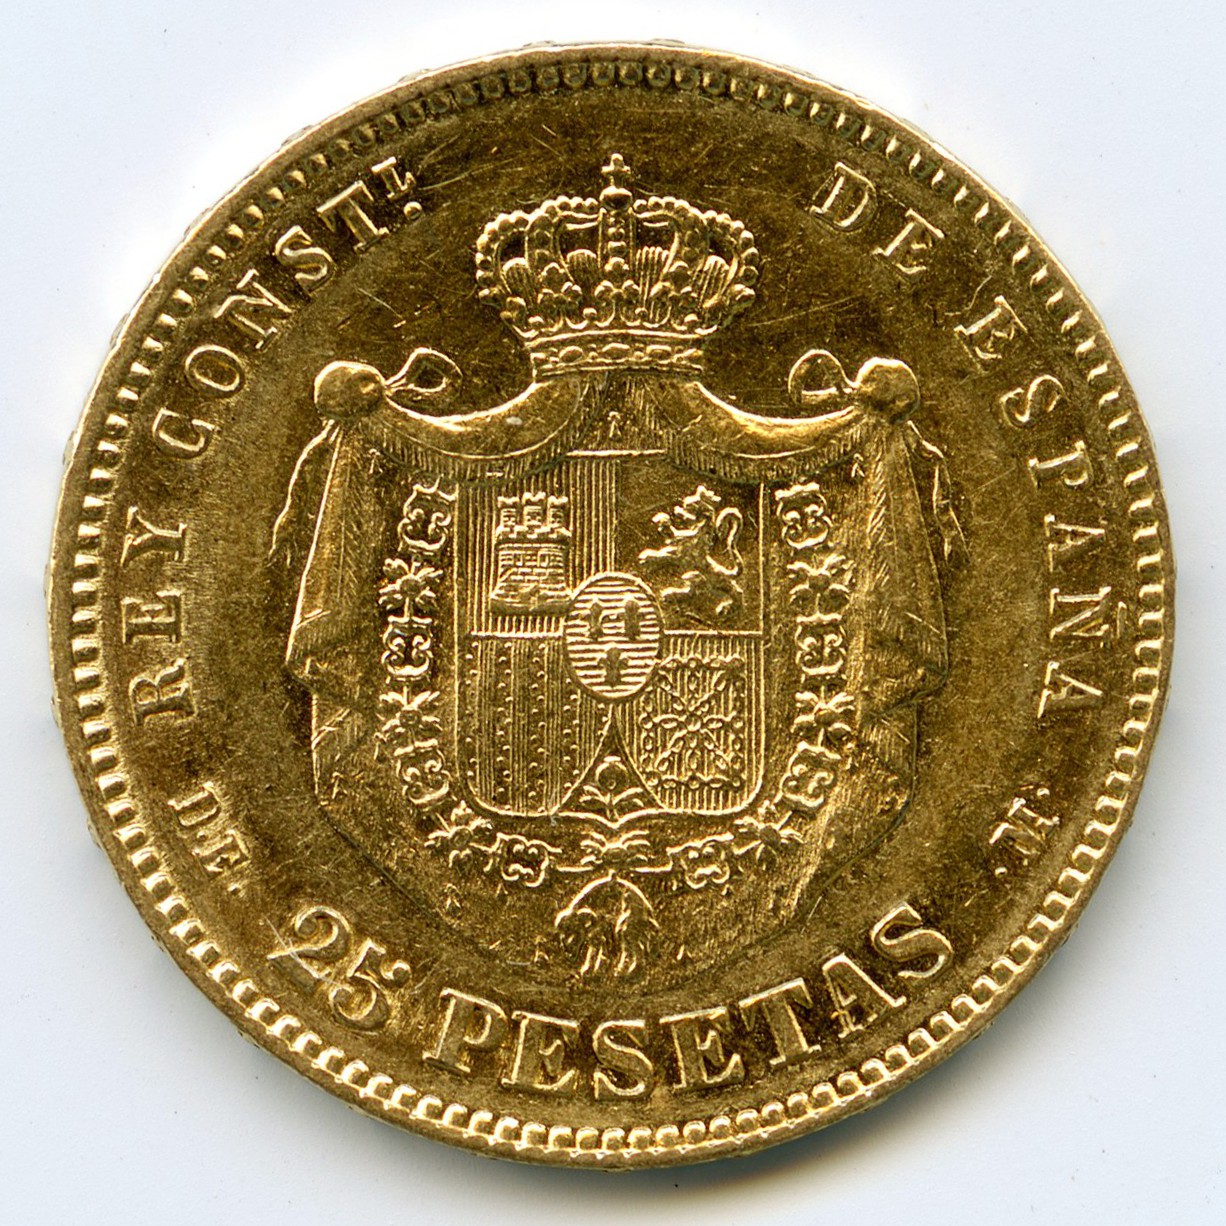 Espagne - 25 Pesetas - 1878 revers